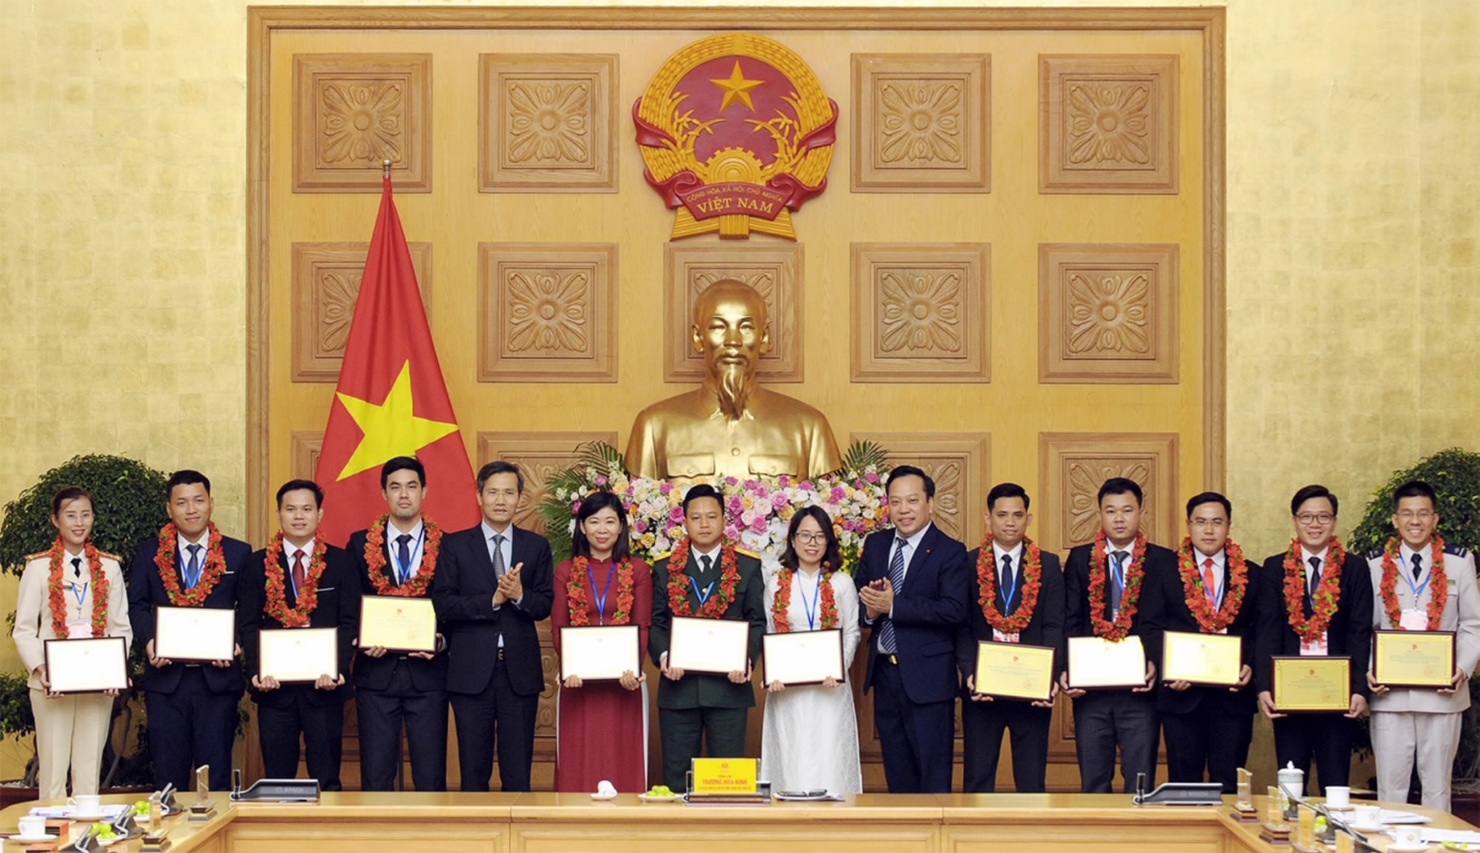 Đồng chí Vũ Nguyệt Vân - công chức KBNN (trang phục áo dài trắng) nhận Giải thưởng Cán bộ, công chức, viên chức trẻ giỏi toàn quốc năm 2020.